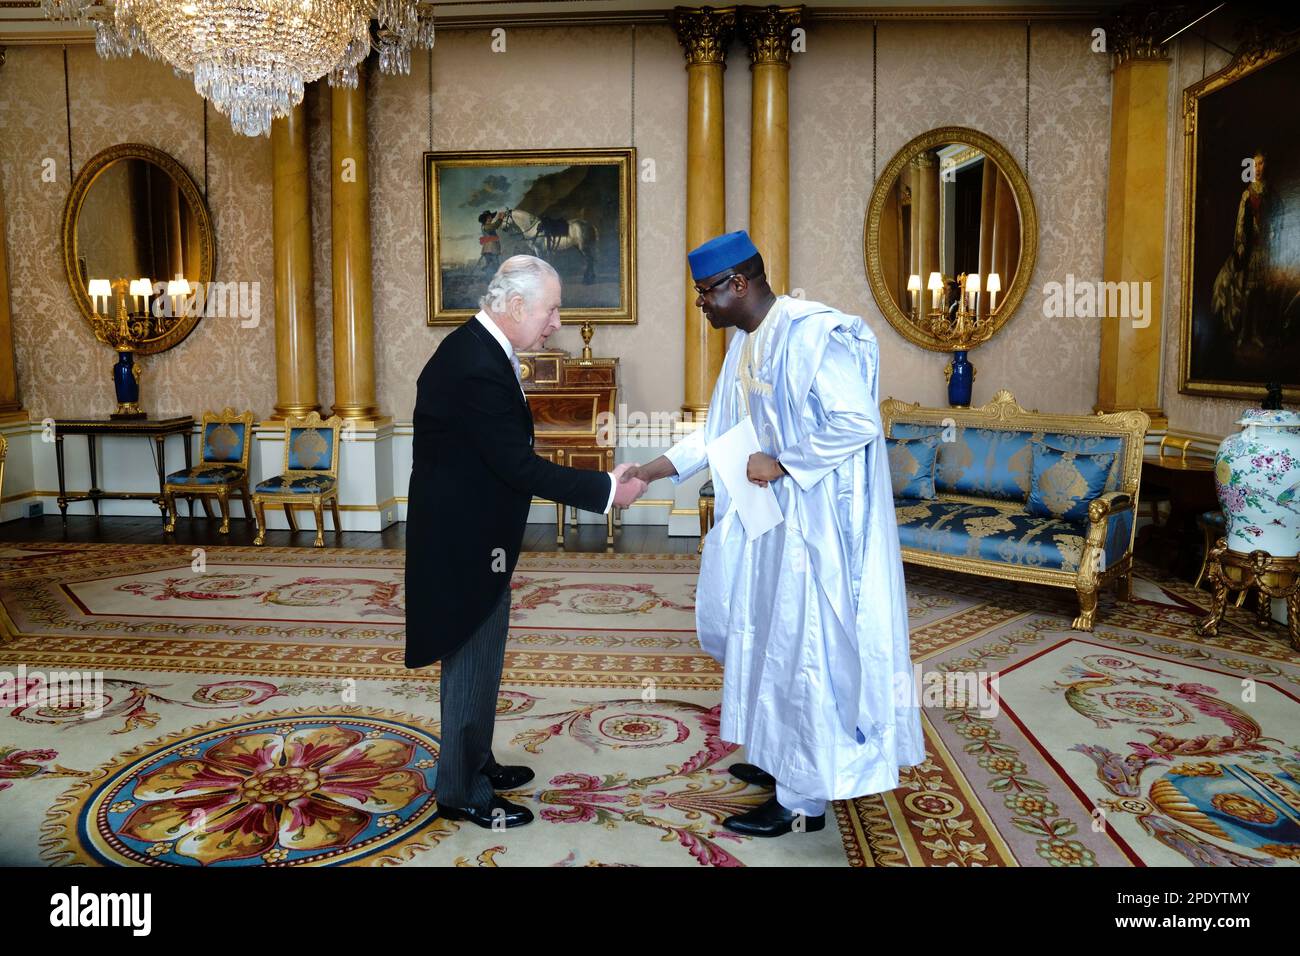 Le roi Charles III reçoit l'ambassadeur de la République du Mali, El Hadji Alhousseini Traore, lors d'un audience au Palais de Buckingham, à Londres. Date de la photo: Mercredi 15 mars 2023. Banque D'Images